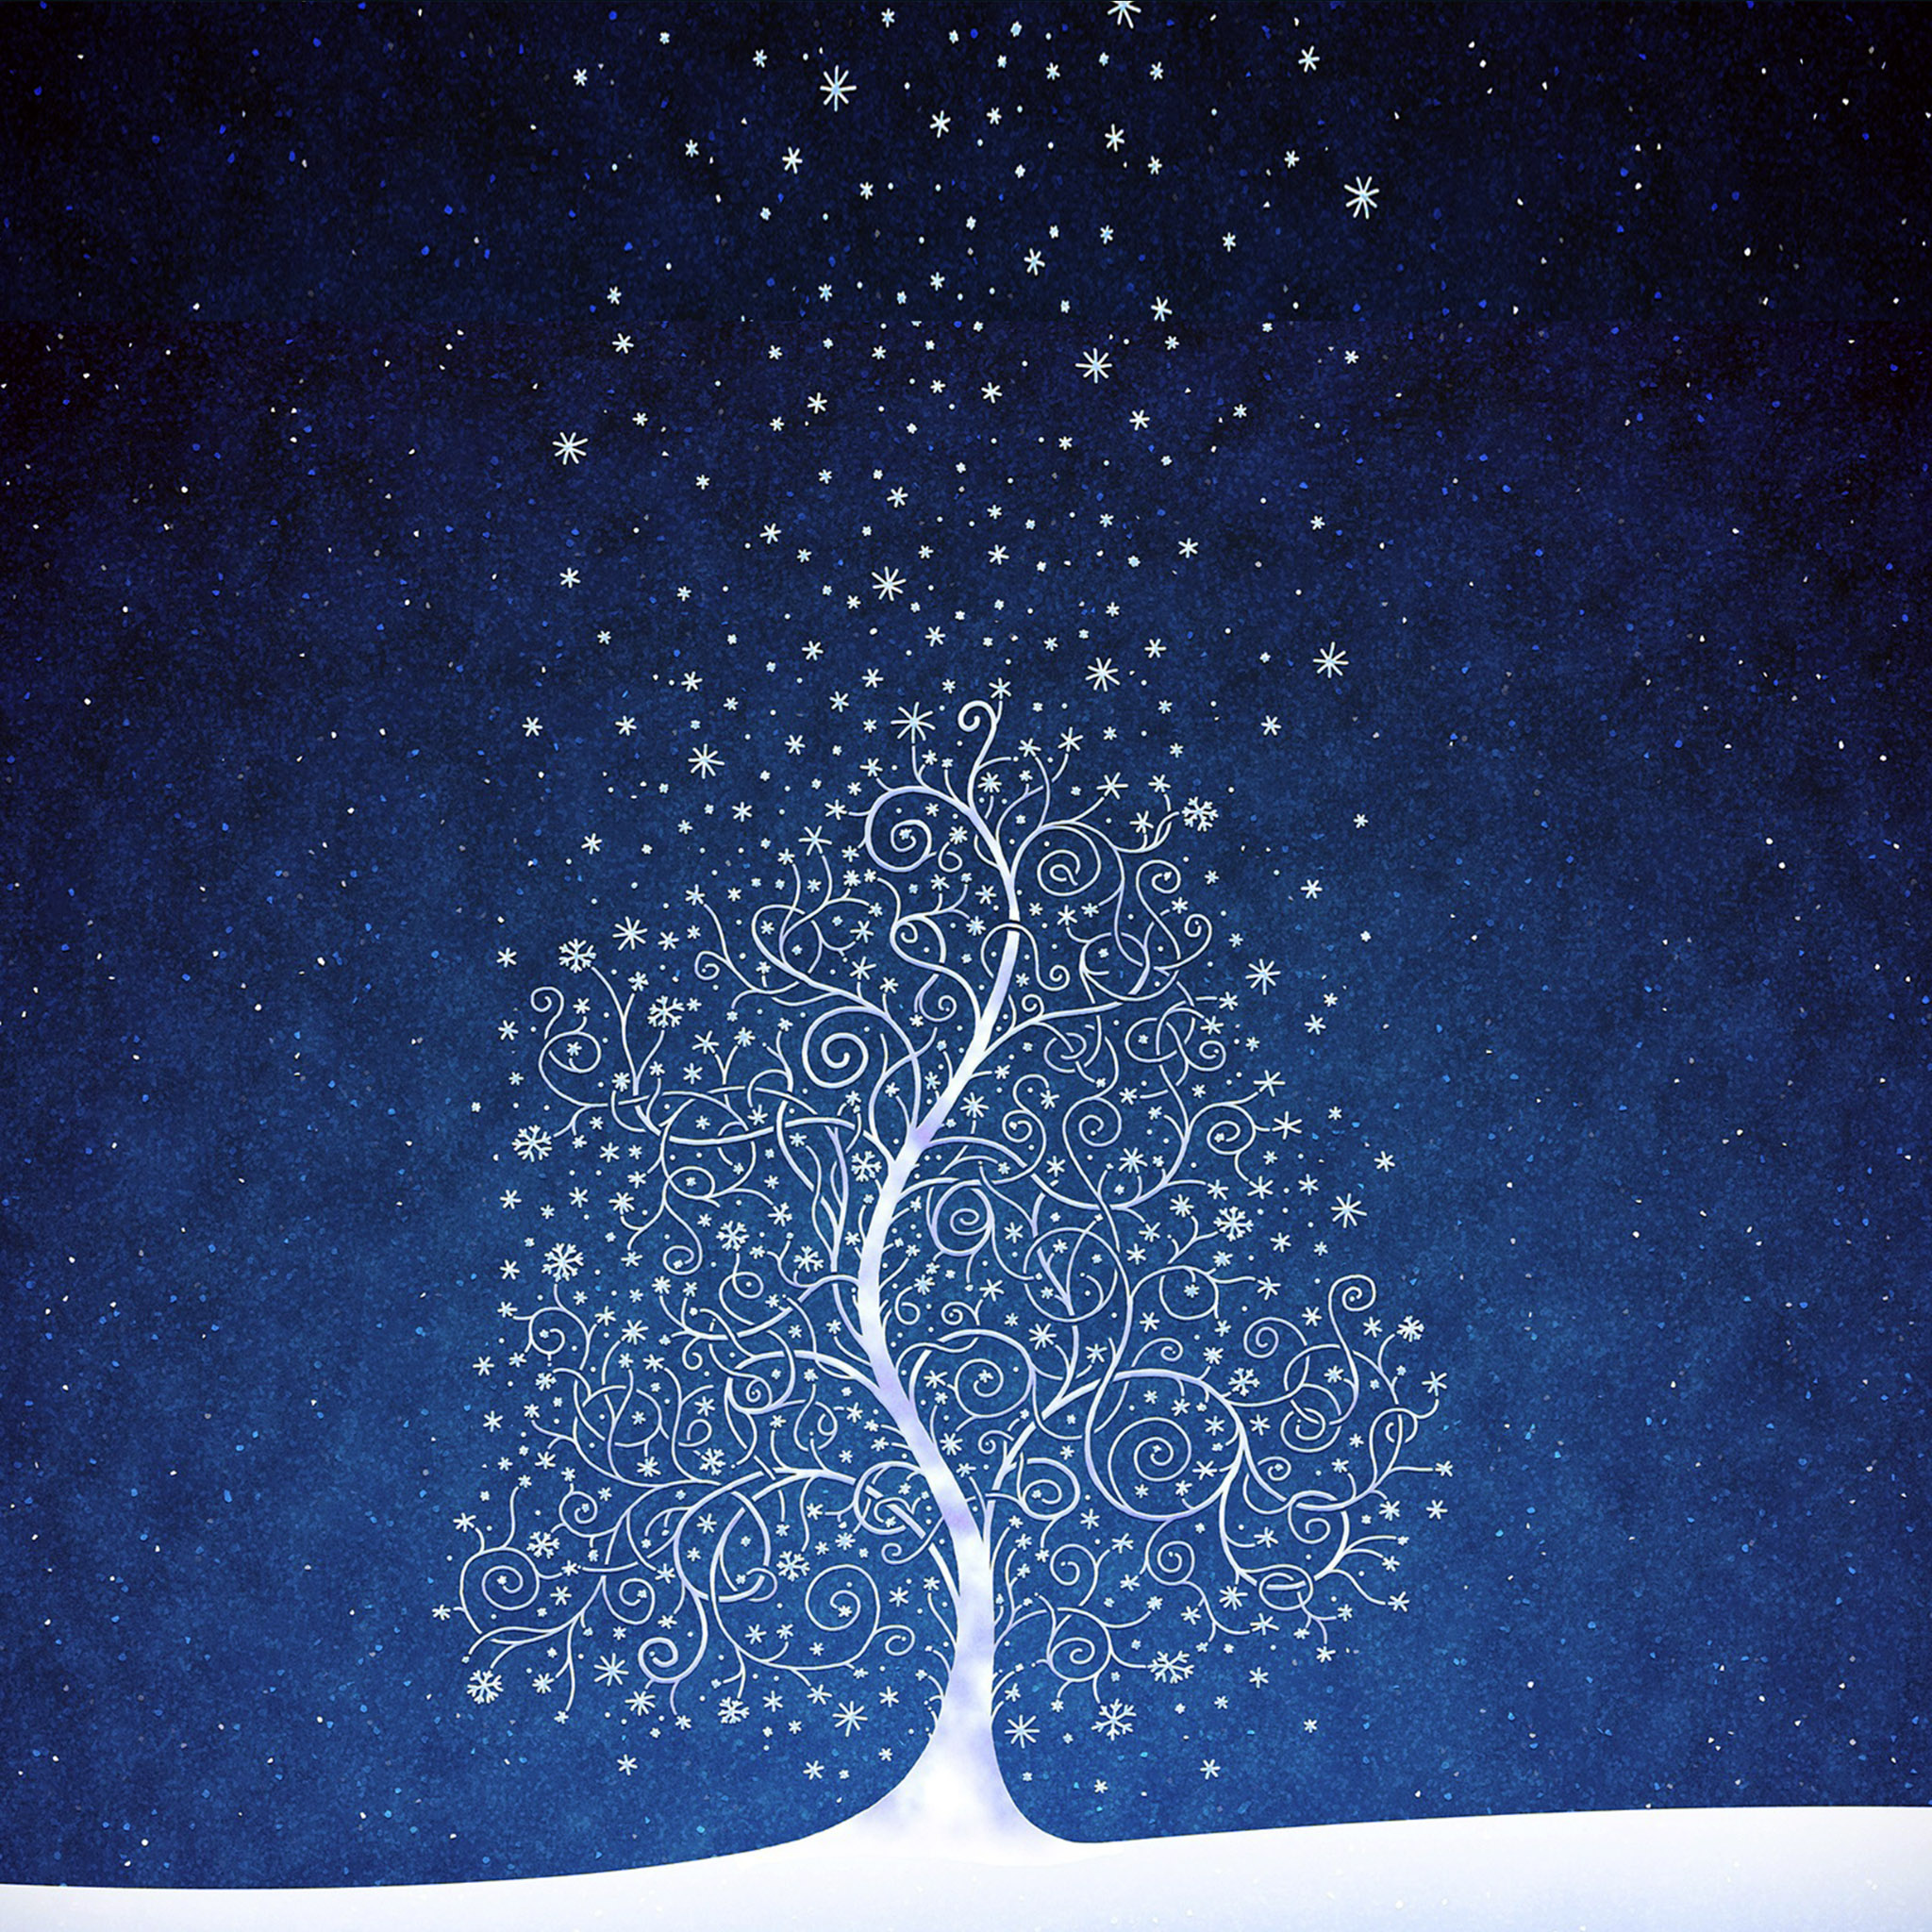 人気167位 綺麗な雪夜のイラスト Ipad タブレット壁紙ギャラリー